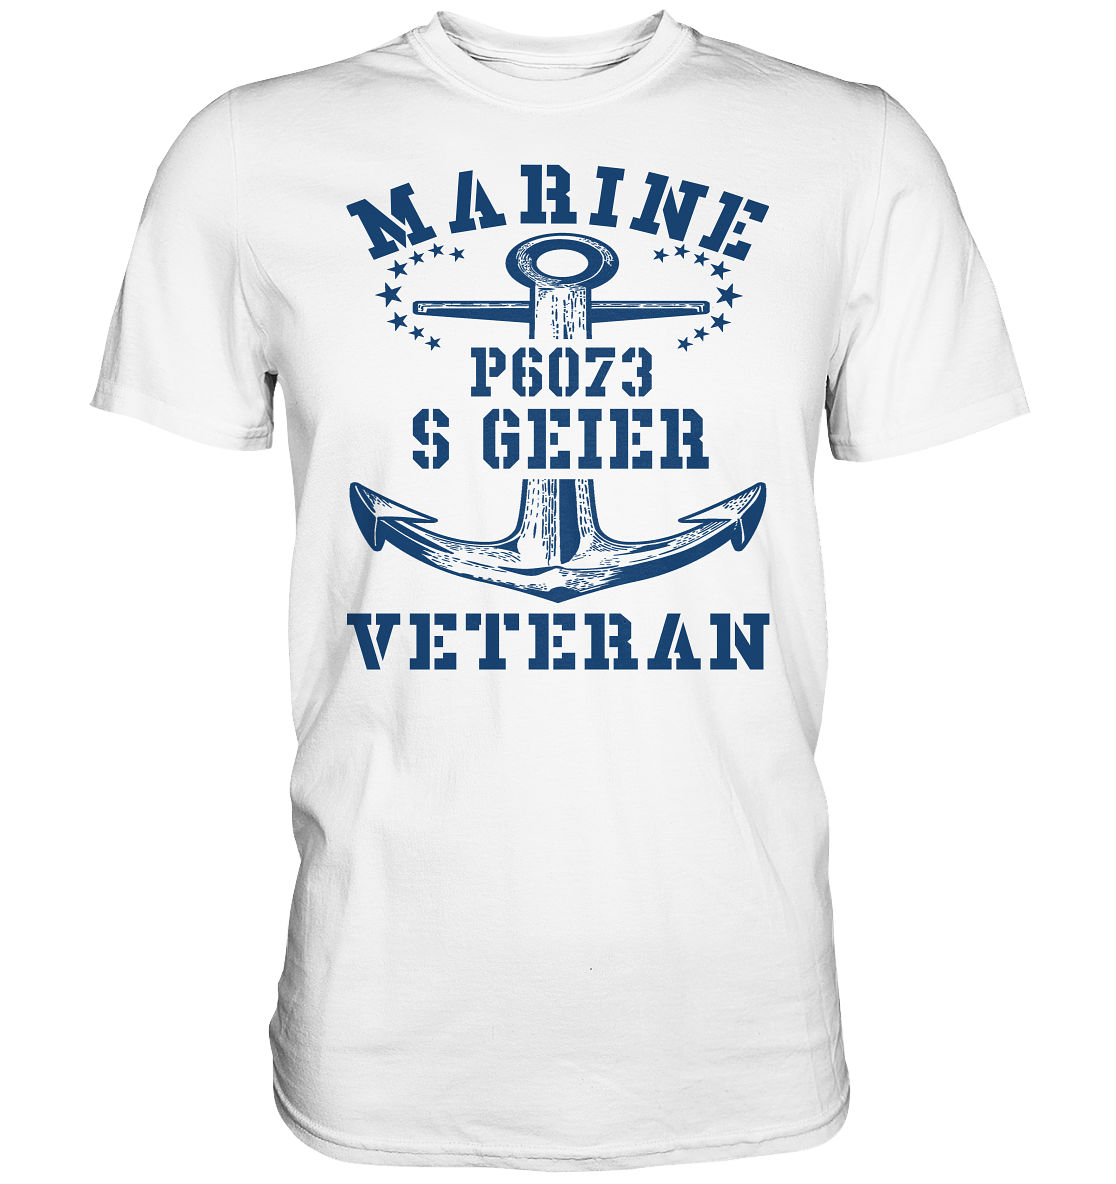 P6073 S GEIER Marine Veteran - Premium Shirt